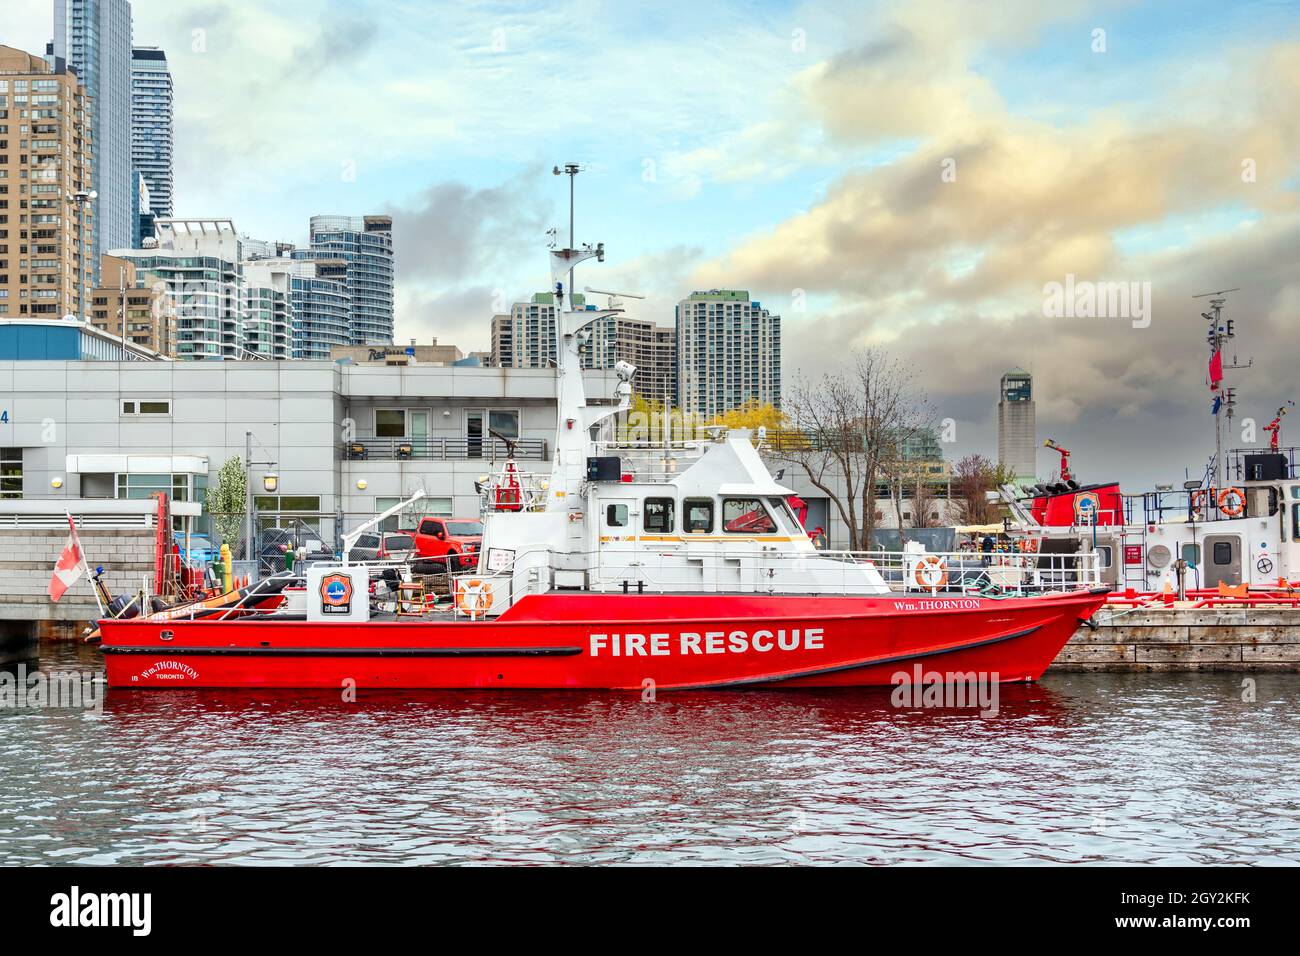 WM. Thornton bateau de sauvetage incendie dans le lac Ontario, dans le secteur riverain de Toronto, Canada Banque D'Images